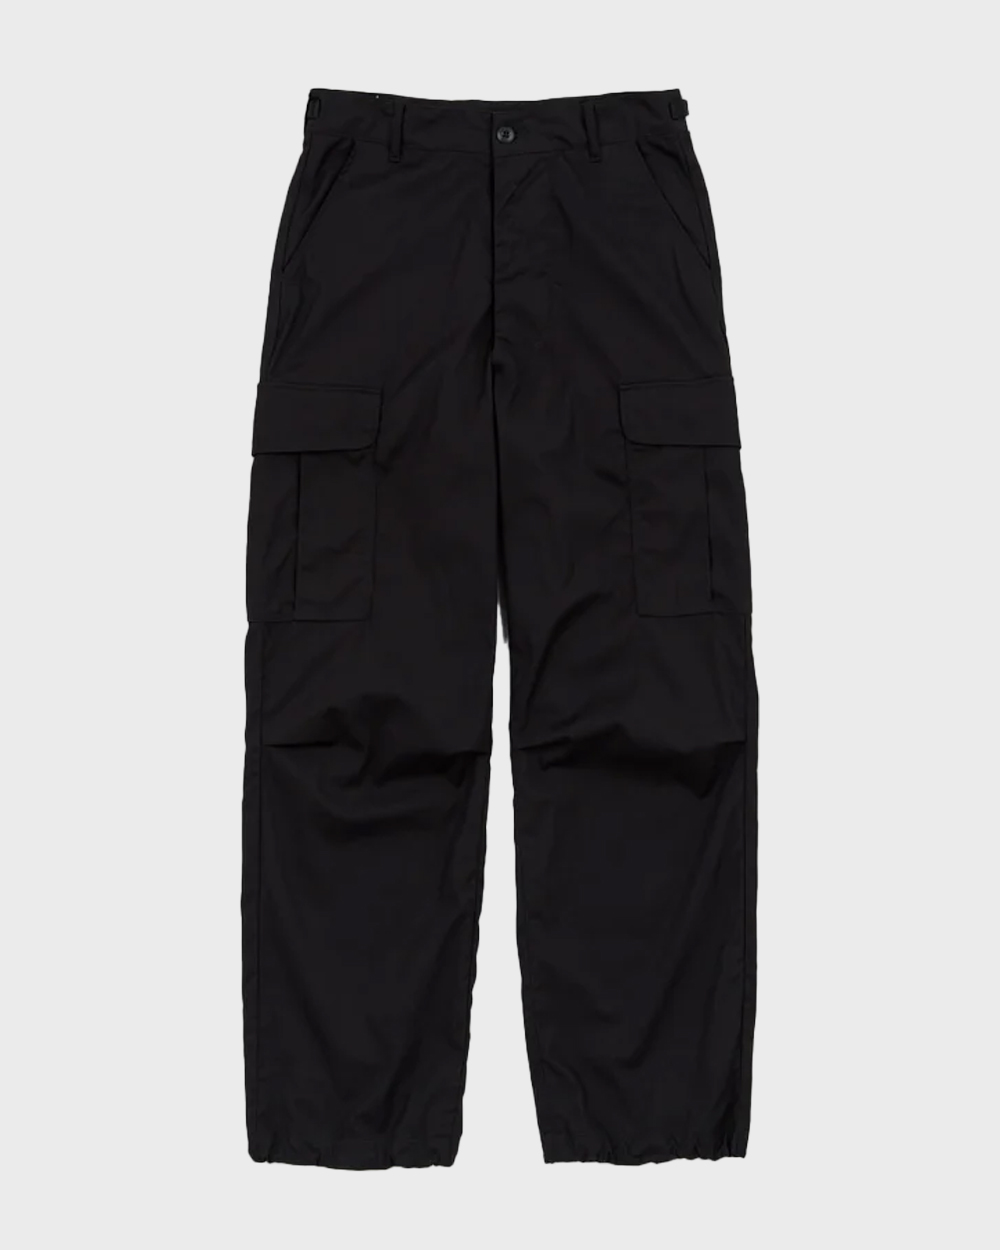 Jungle Fatigue Pants (Black)